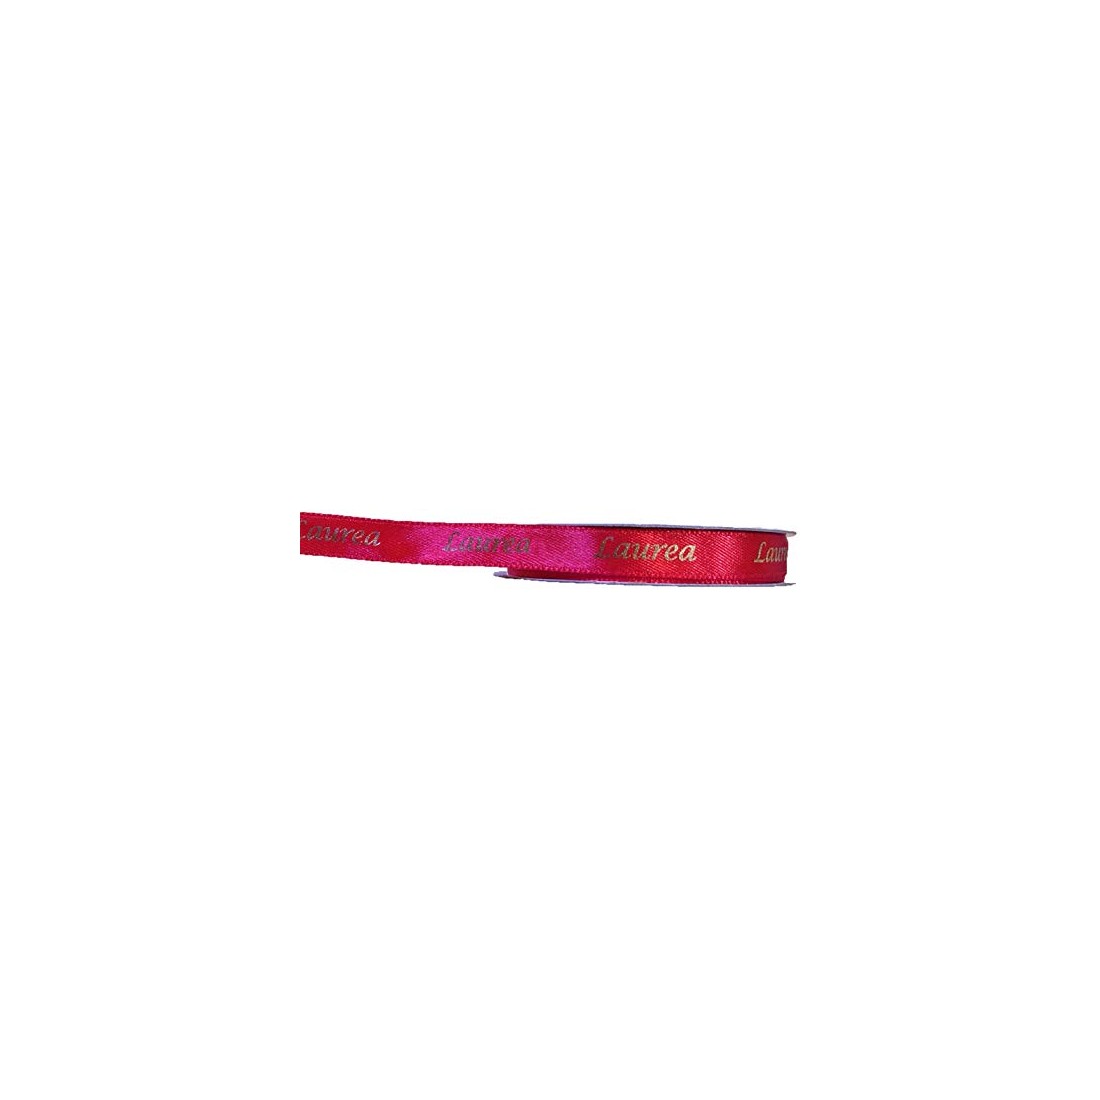 Nastro doppio raso 10 mm rotolo bobina 25mt rosso scritta LAUREA oro art DL1016